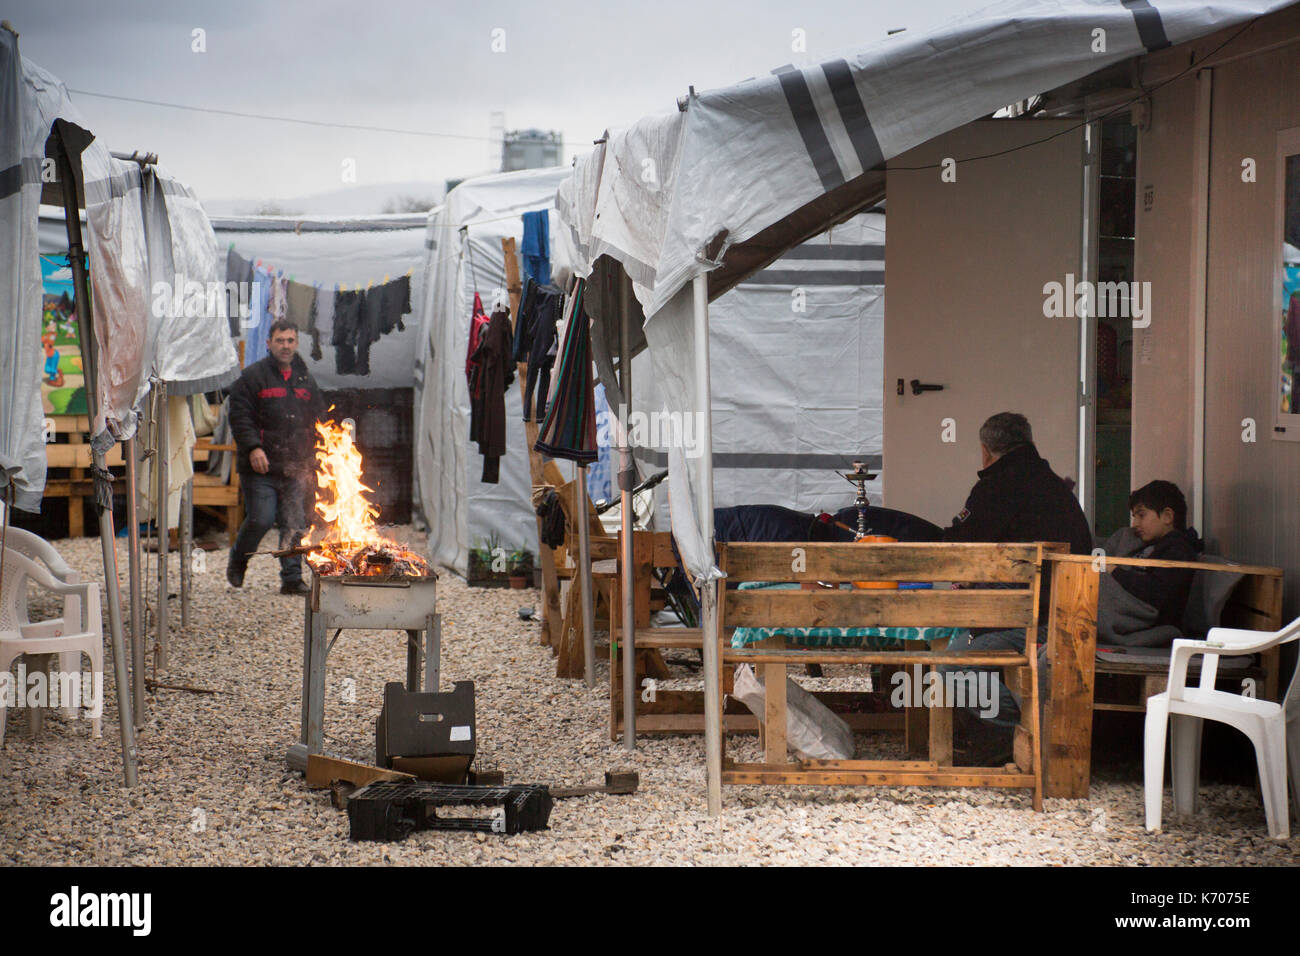 Un barbecue en préparation entre les rangées d'habitations sur un iso-box' journée grise à ritsona camp de réfugiés en grèce. Banque D'Images